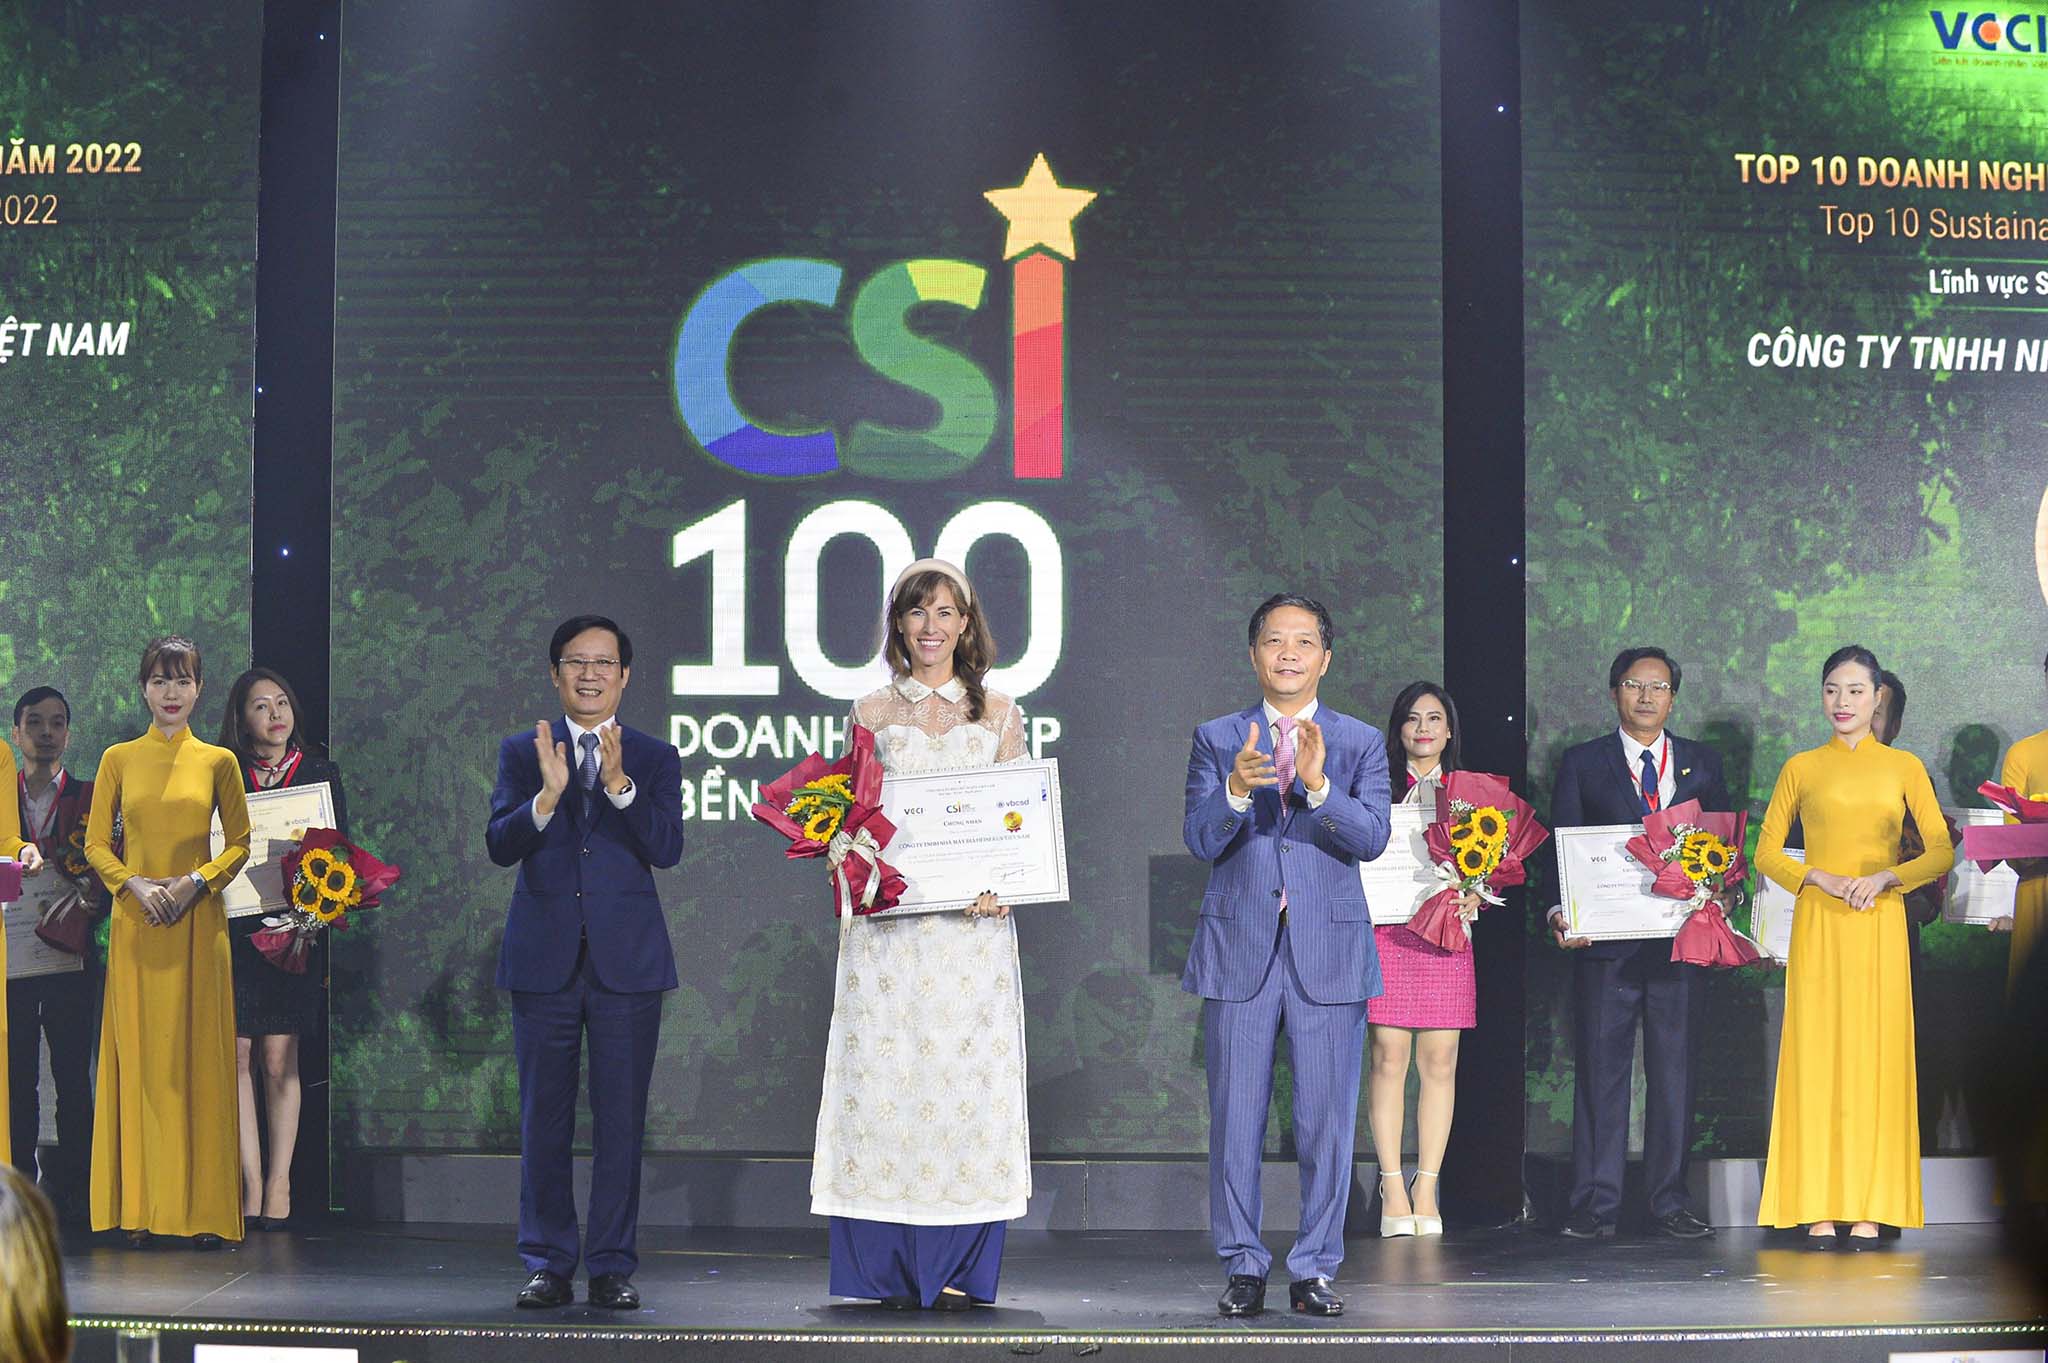 HEINEKEN Việt Nam được vinh danh TOP 2 tại Lễ trao giải CSI 2022, đánh dấu năm thứ 7 liên tiếp là một trong những doanh nghiệp phát triển bền vững nhất tại Việt Nam